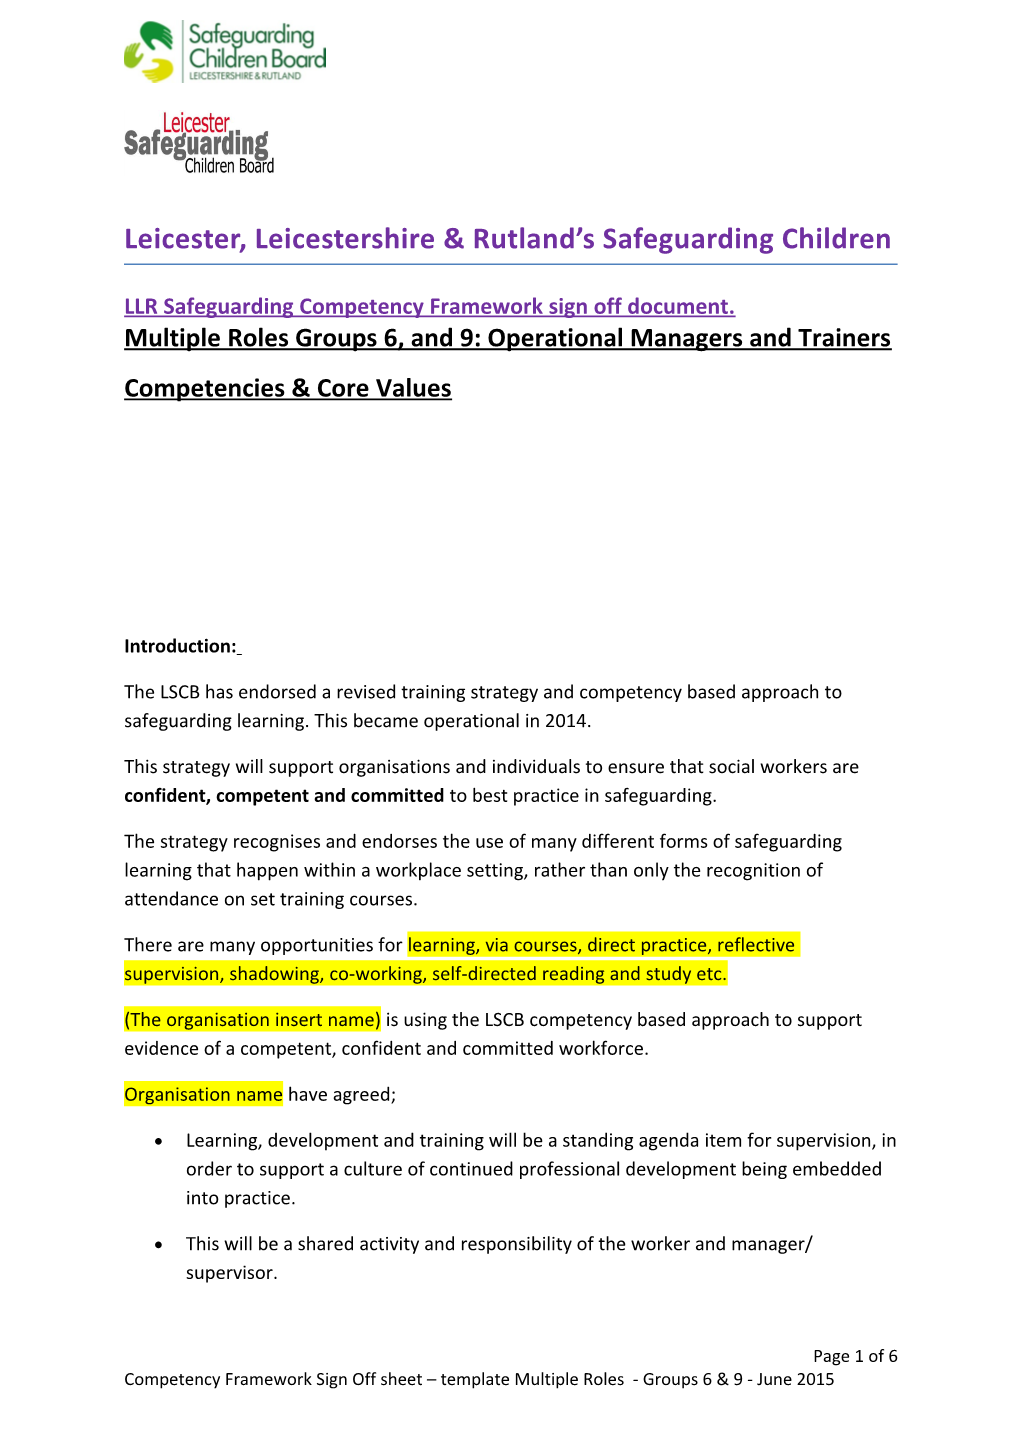 LLR Safeguarding Competency Framework Sign Off Document